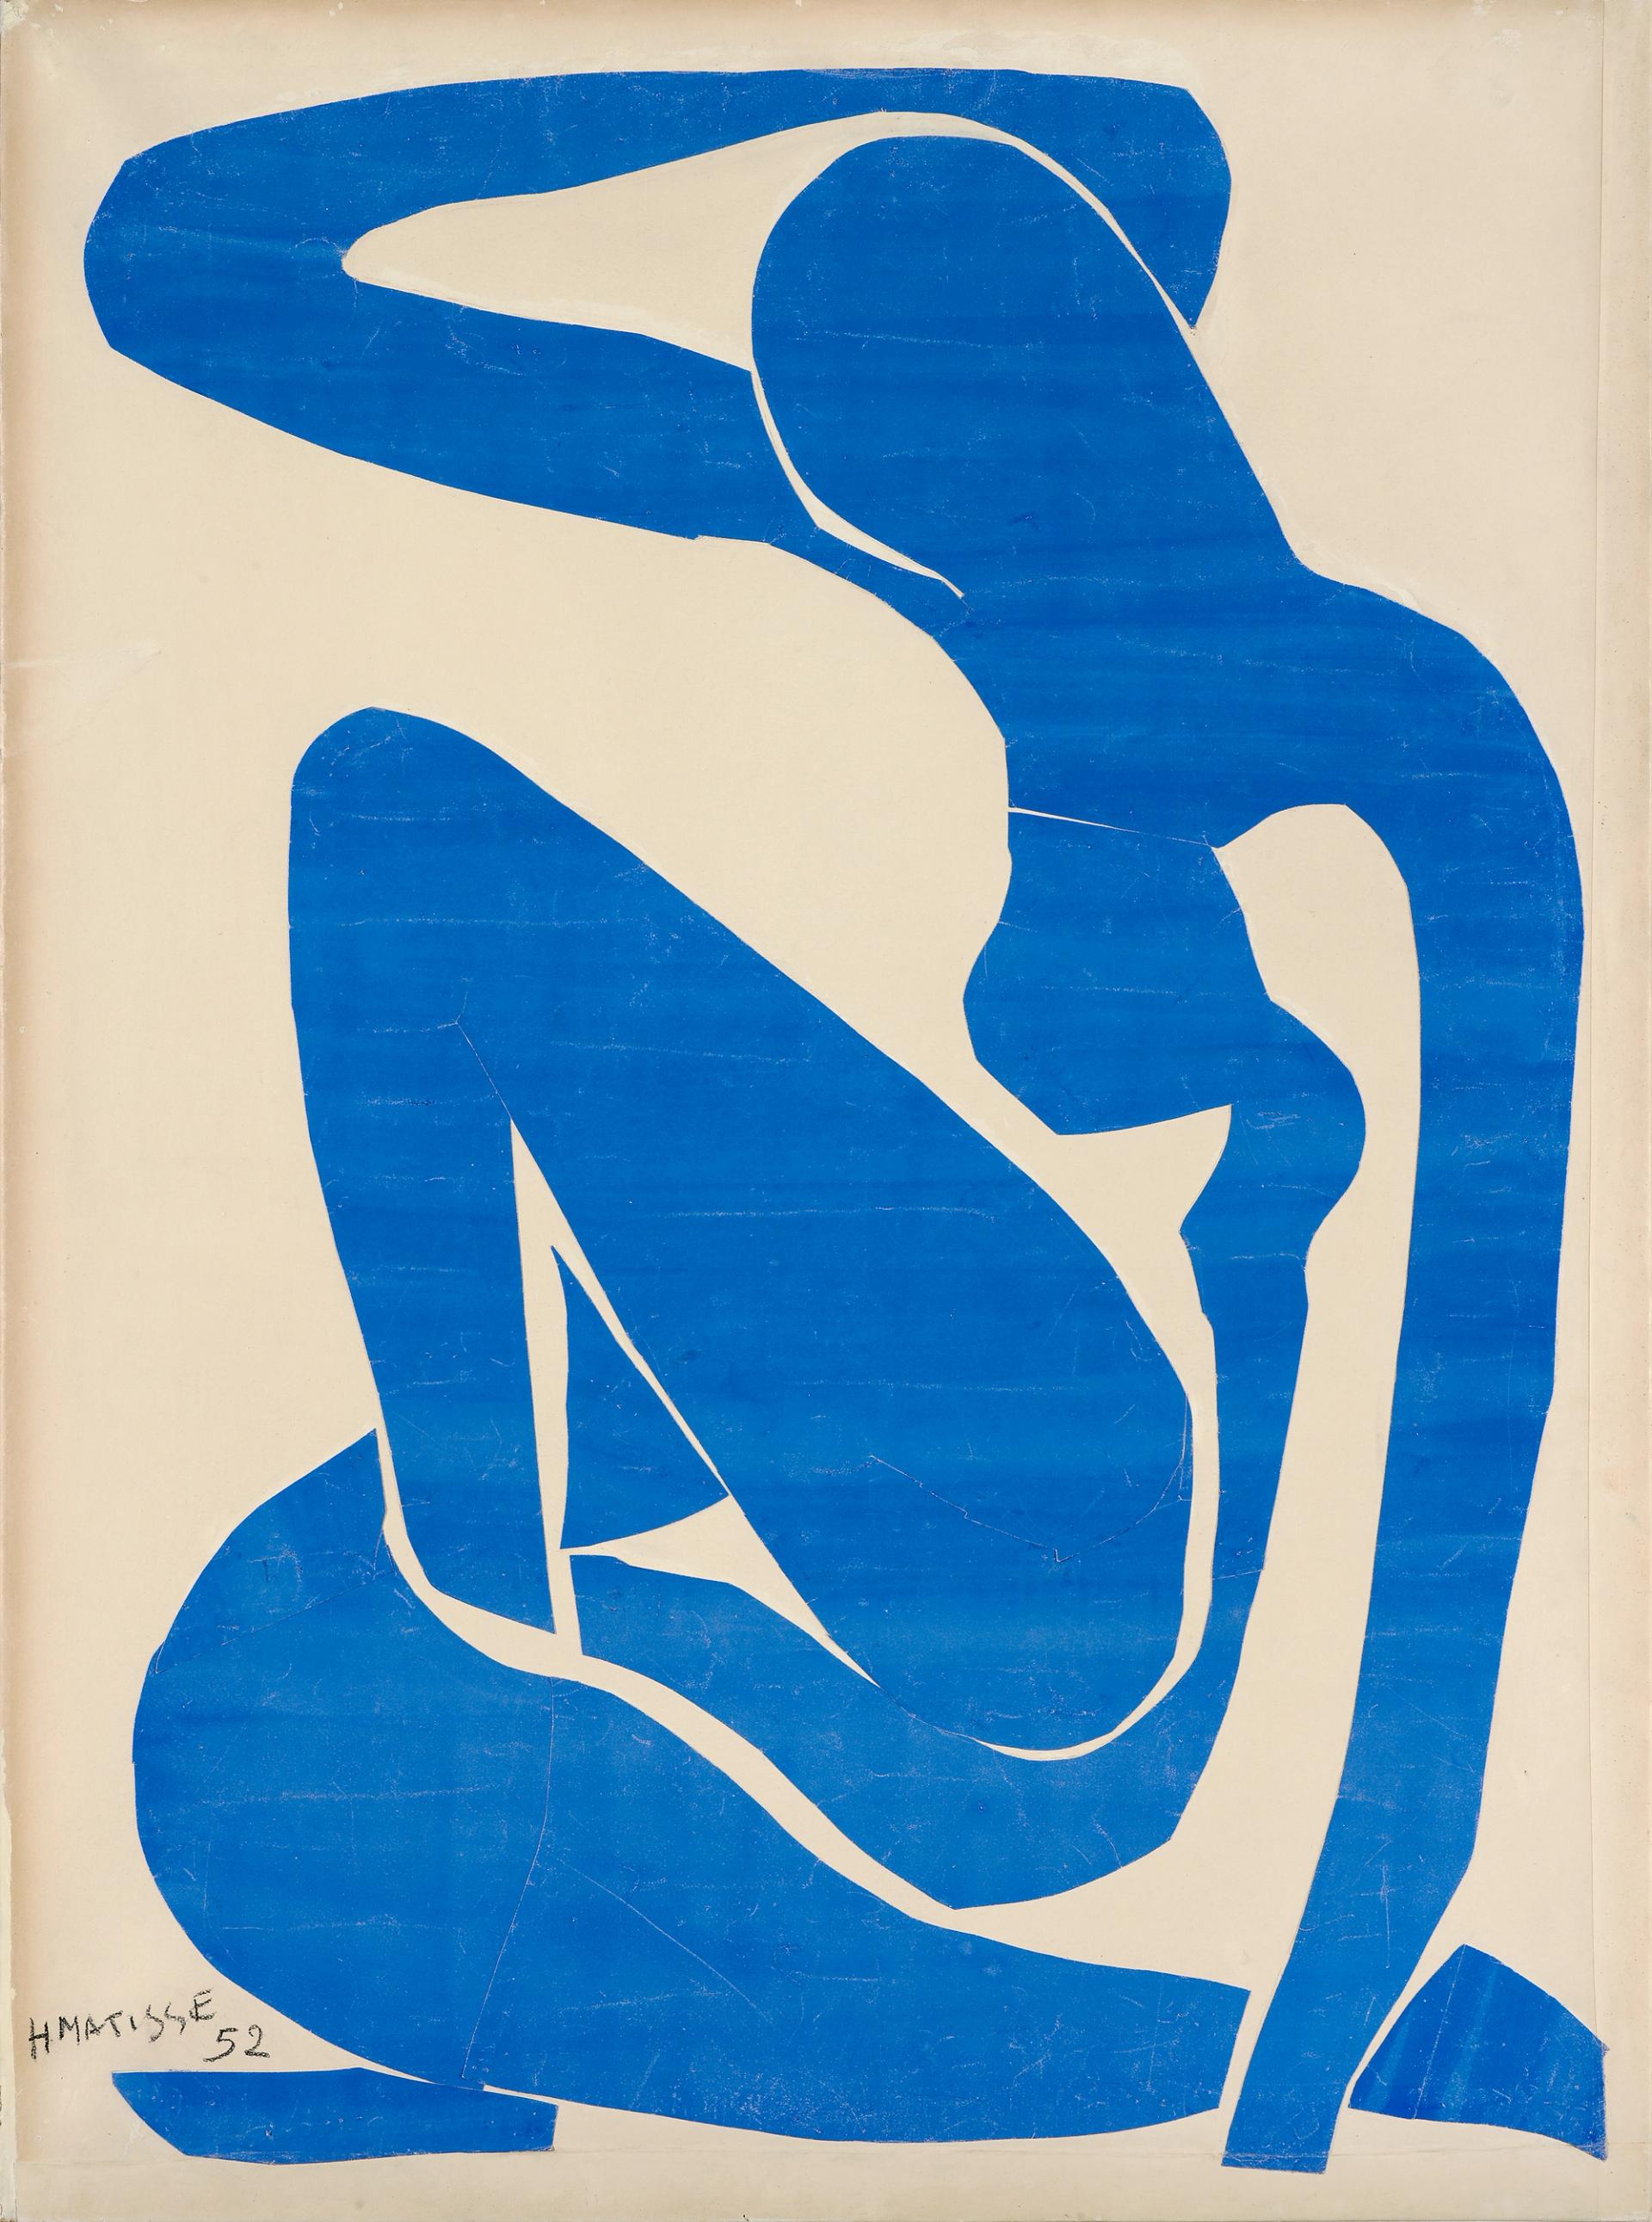 Henri Matisse, Nu bleu I, 1952, papiers découpés peints à la gouache sur papier, Fondation Beyeler, Riehen/Bâle, collection Beyeler. © Succession H. Matisse 2022, ProLitteris, Zurich. Photo Robert Bayer, Bâle